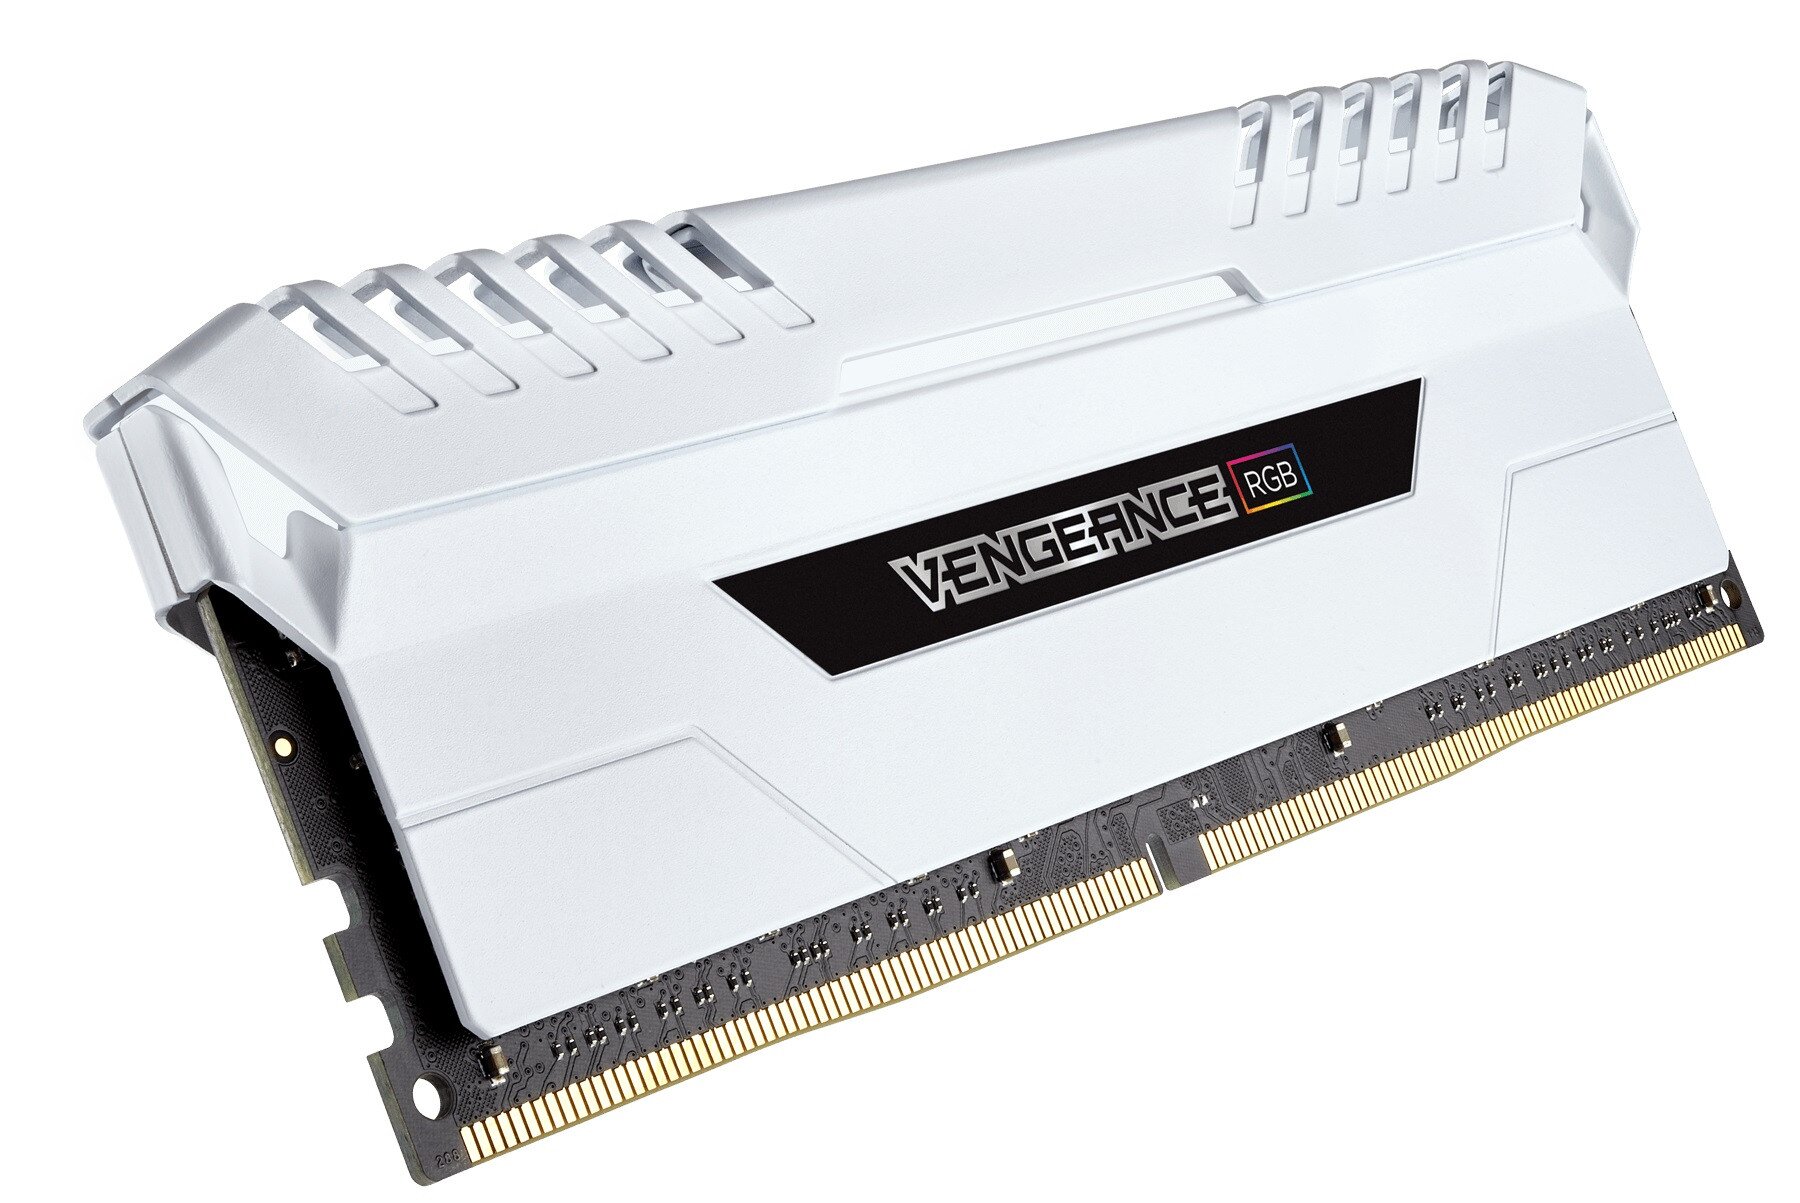 Corsair Vengeance RGB 32GB (4 x 8GB) DDR4 DRAM 3000MHz C15 Memory Kit -  White